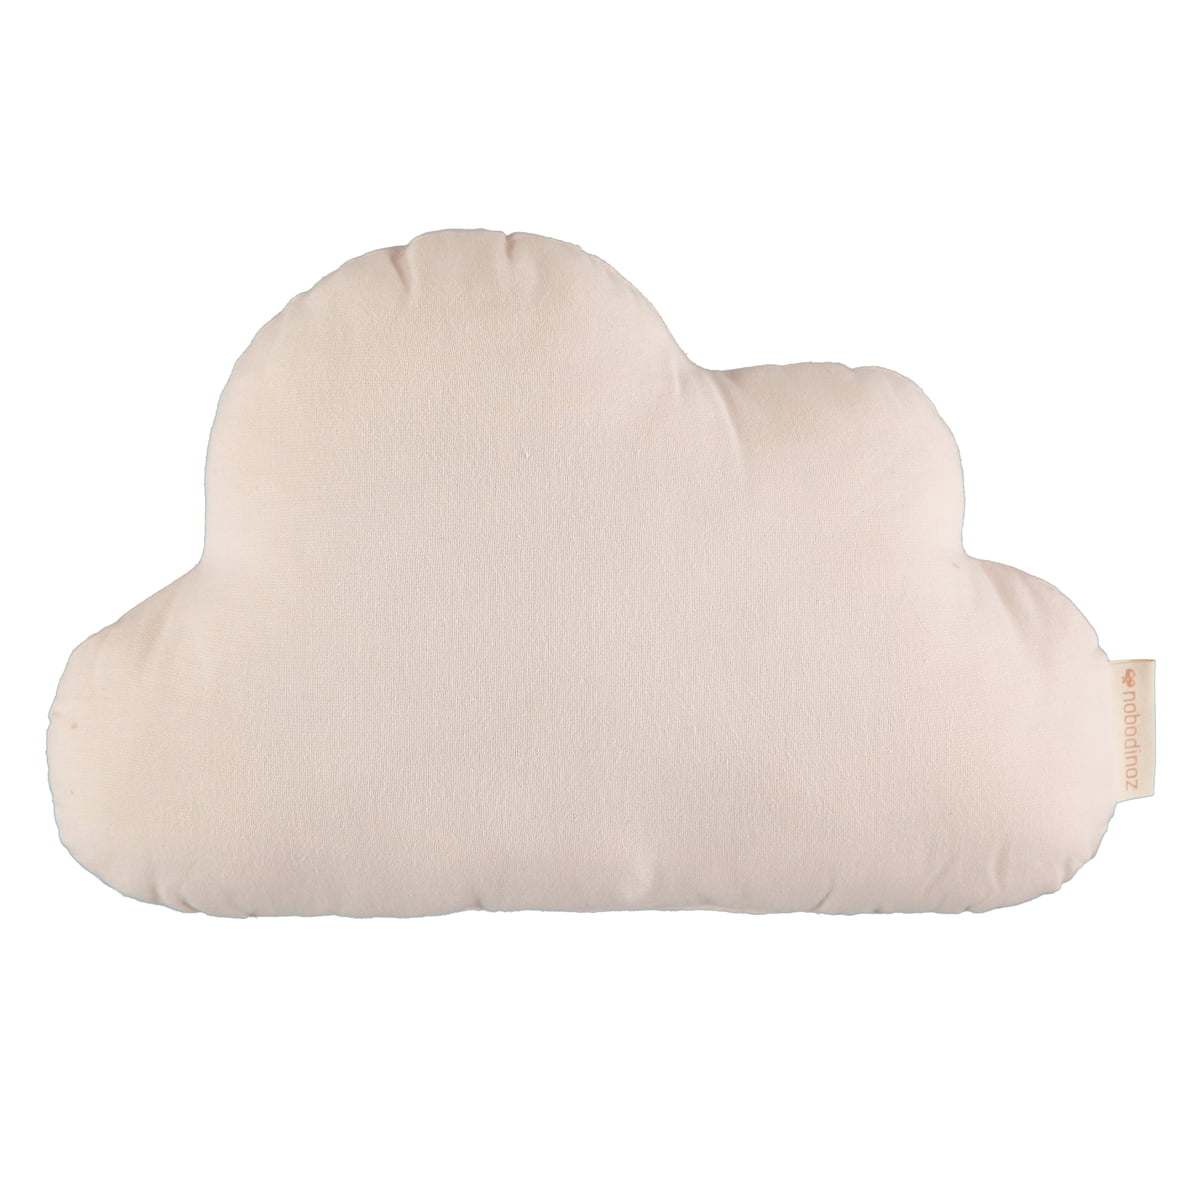 cloud pillow brand